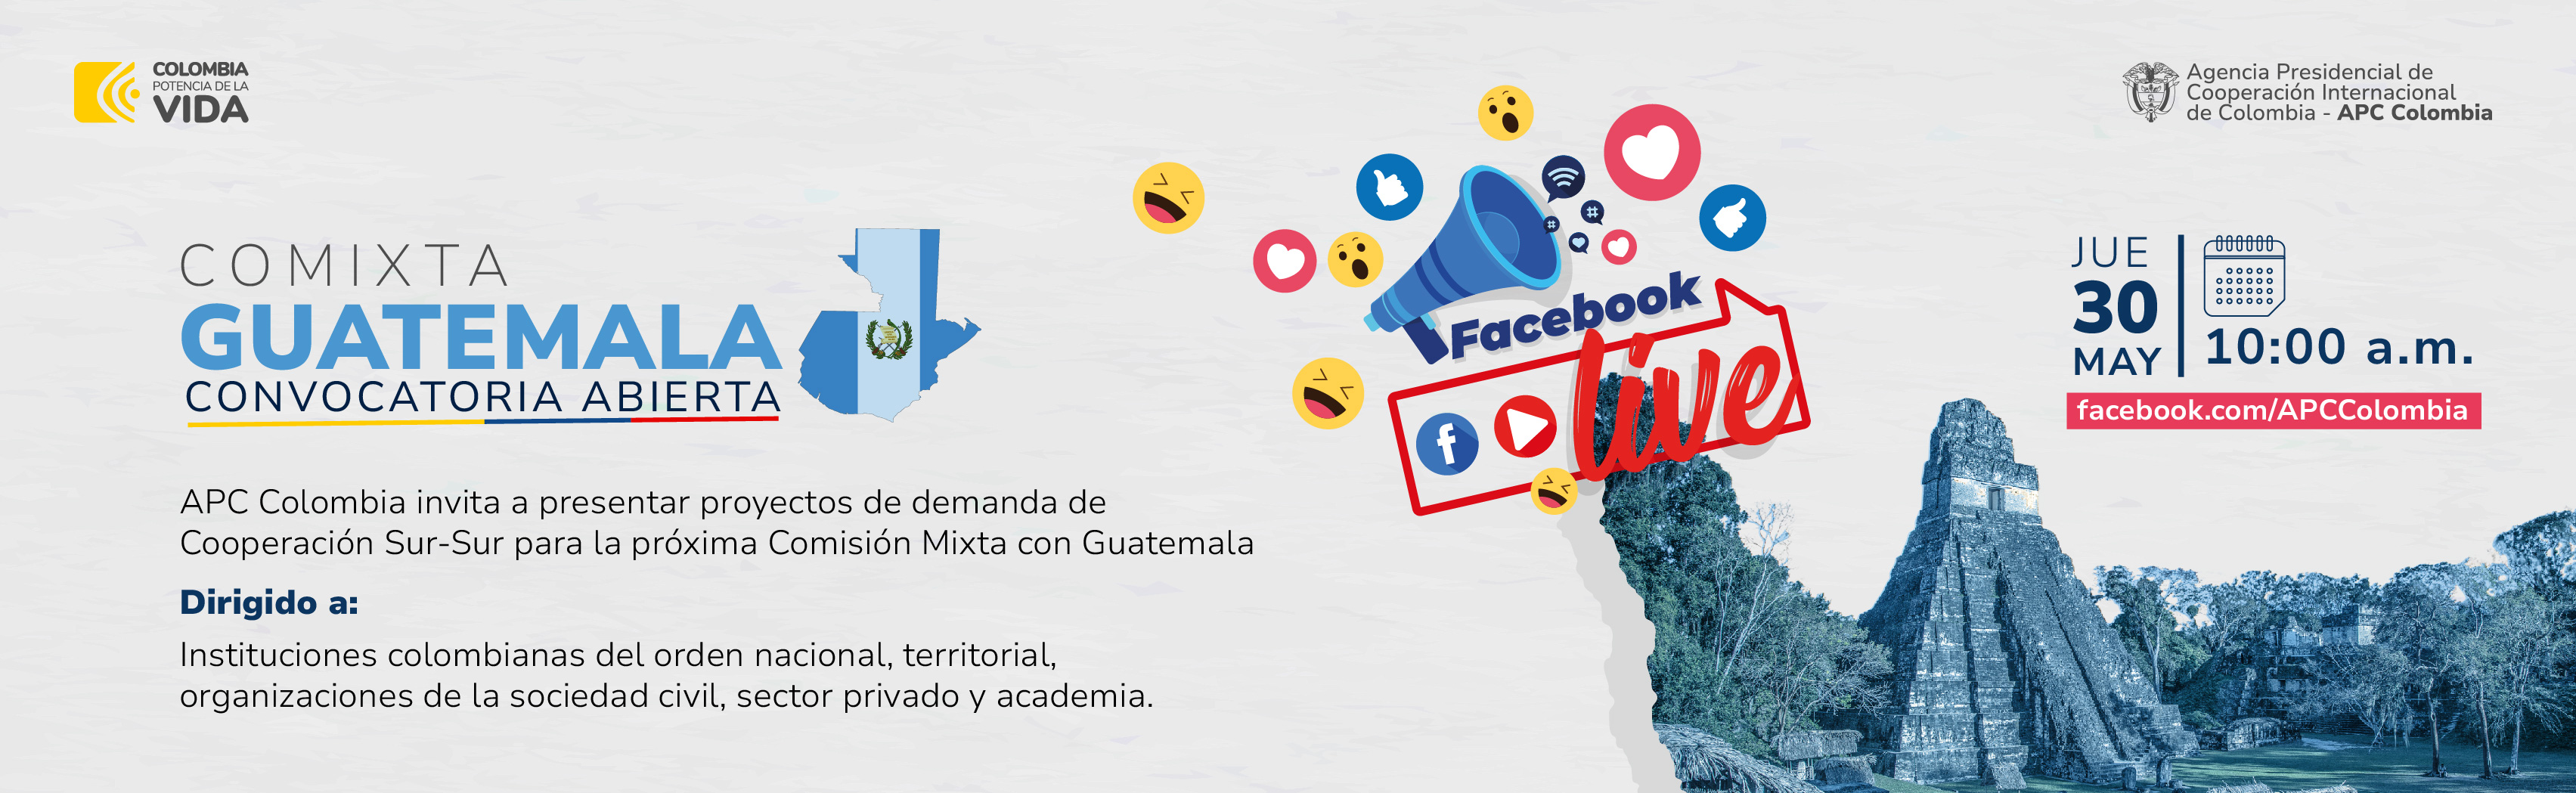 Convocatoria comixta ente Colombia y Guatemala Facebook Live 30 de mayo de 2024 10:00 a.m.